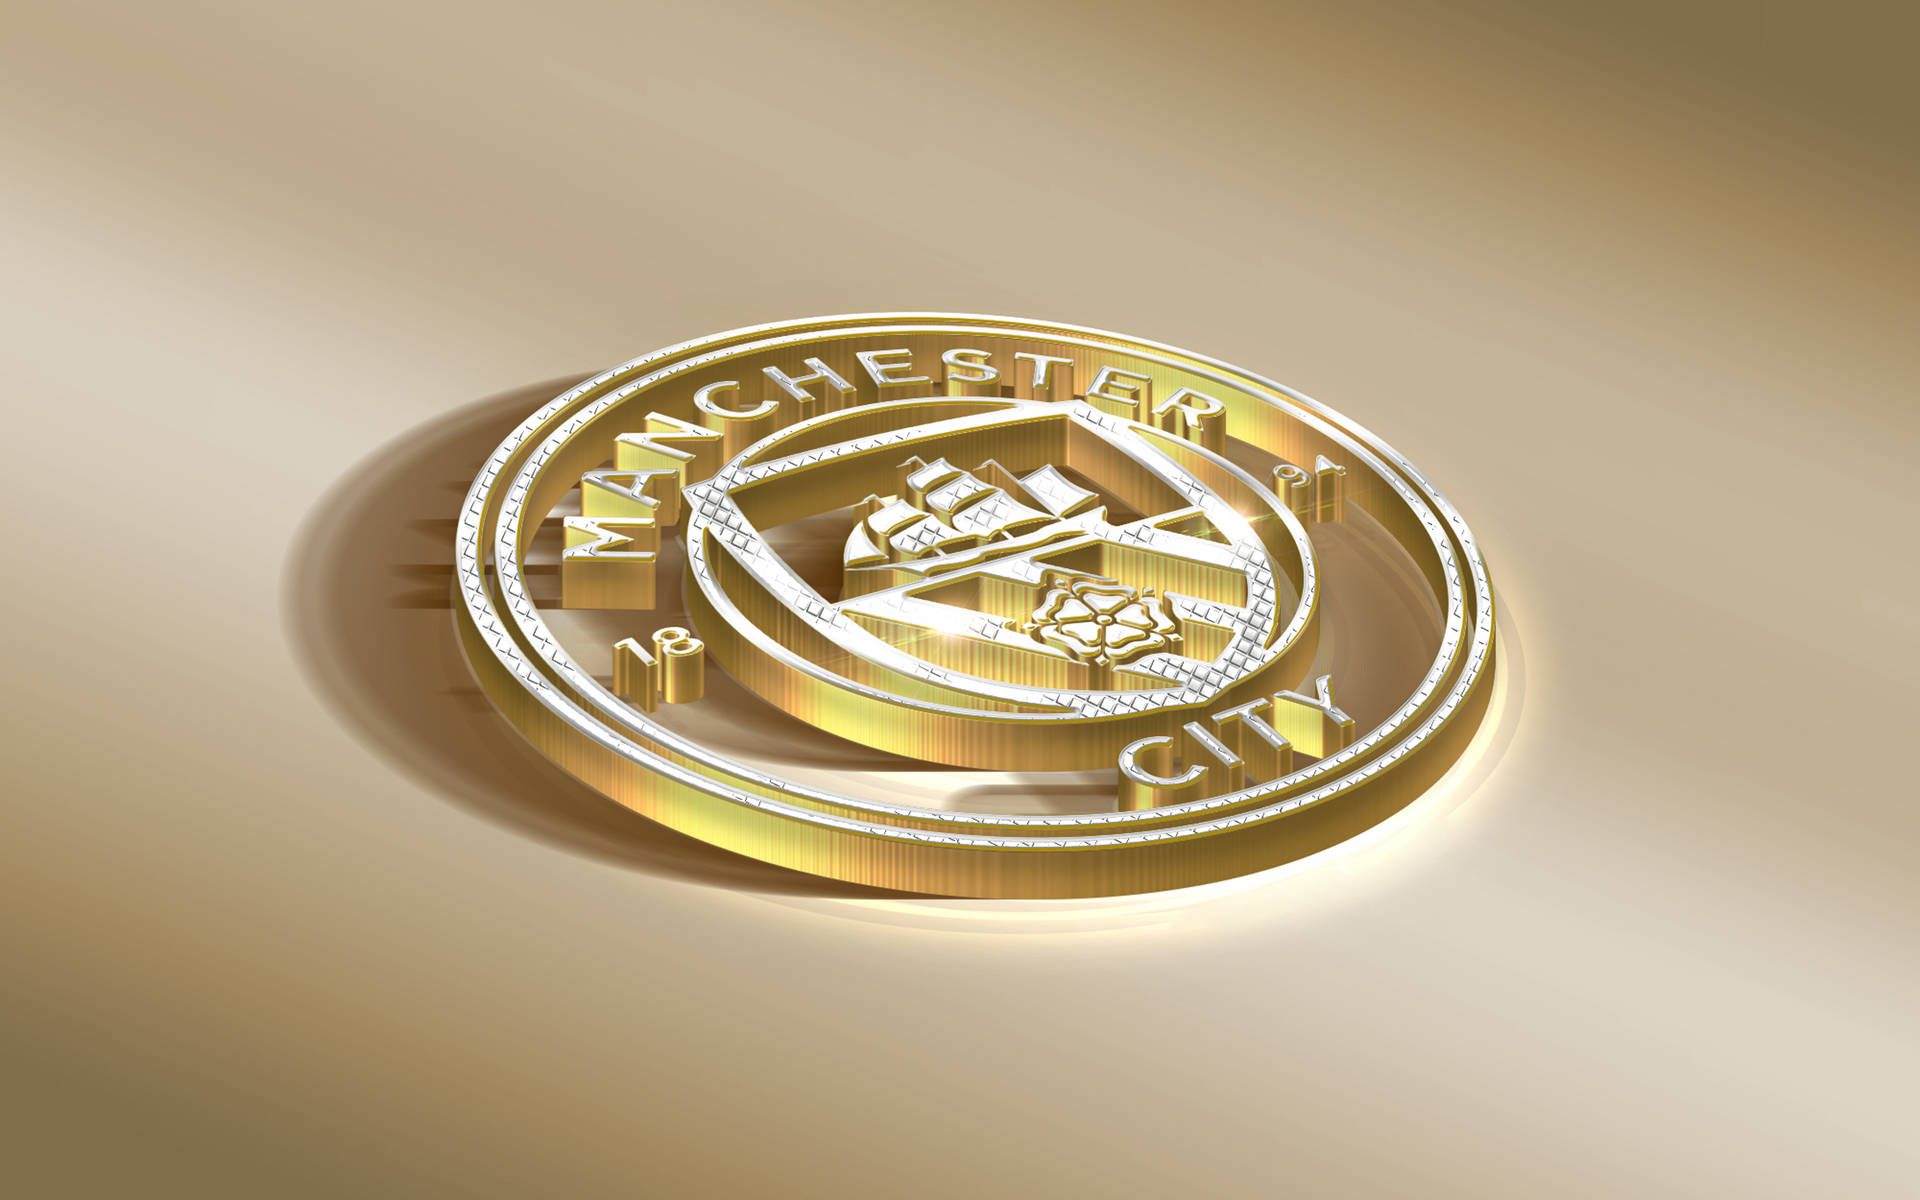 Manchester City 4k Gold Coin Emblem